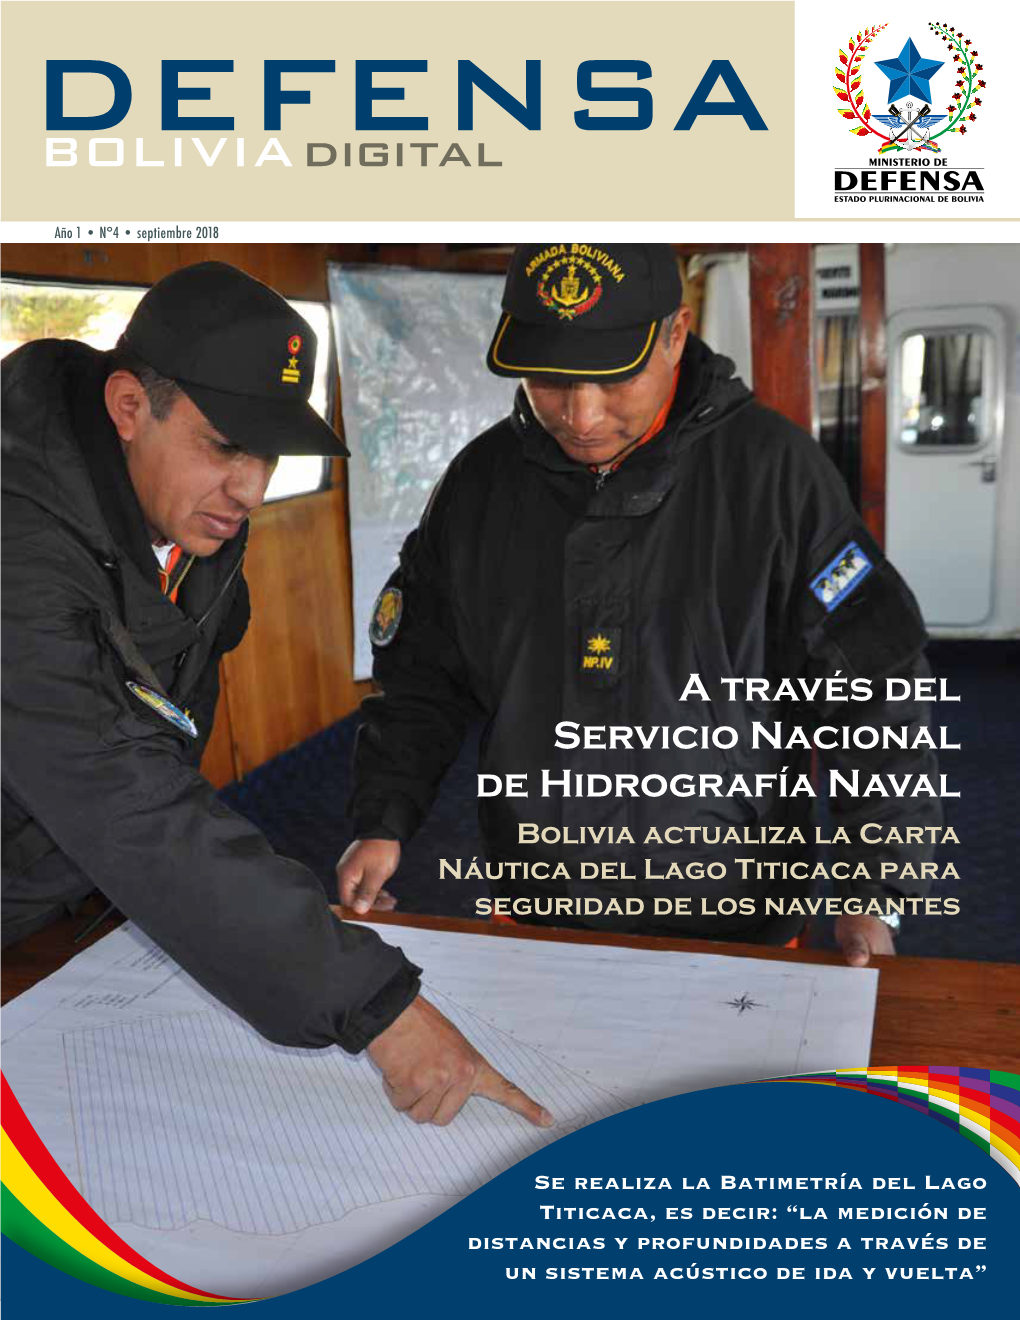 A Través Del Servicio Nacional De Hidrografía Naval Bolivia Actualiza La Carta Náutica Del Lago Titicaca Para Seguridad De Los Navegantes